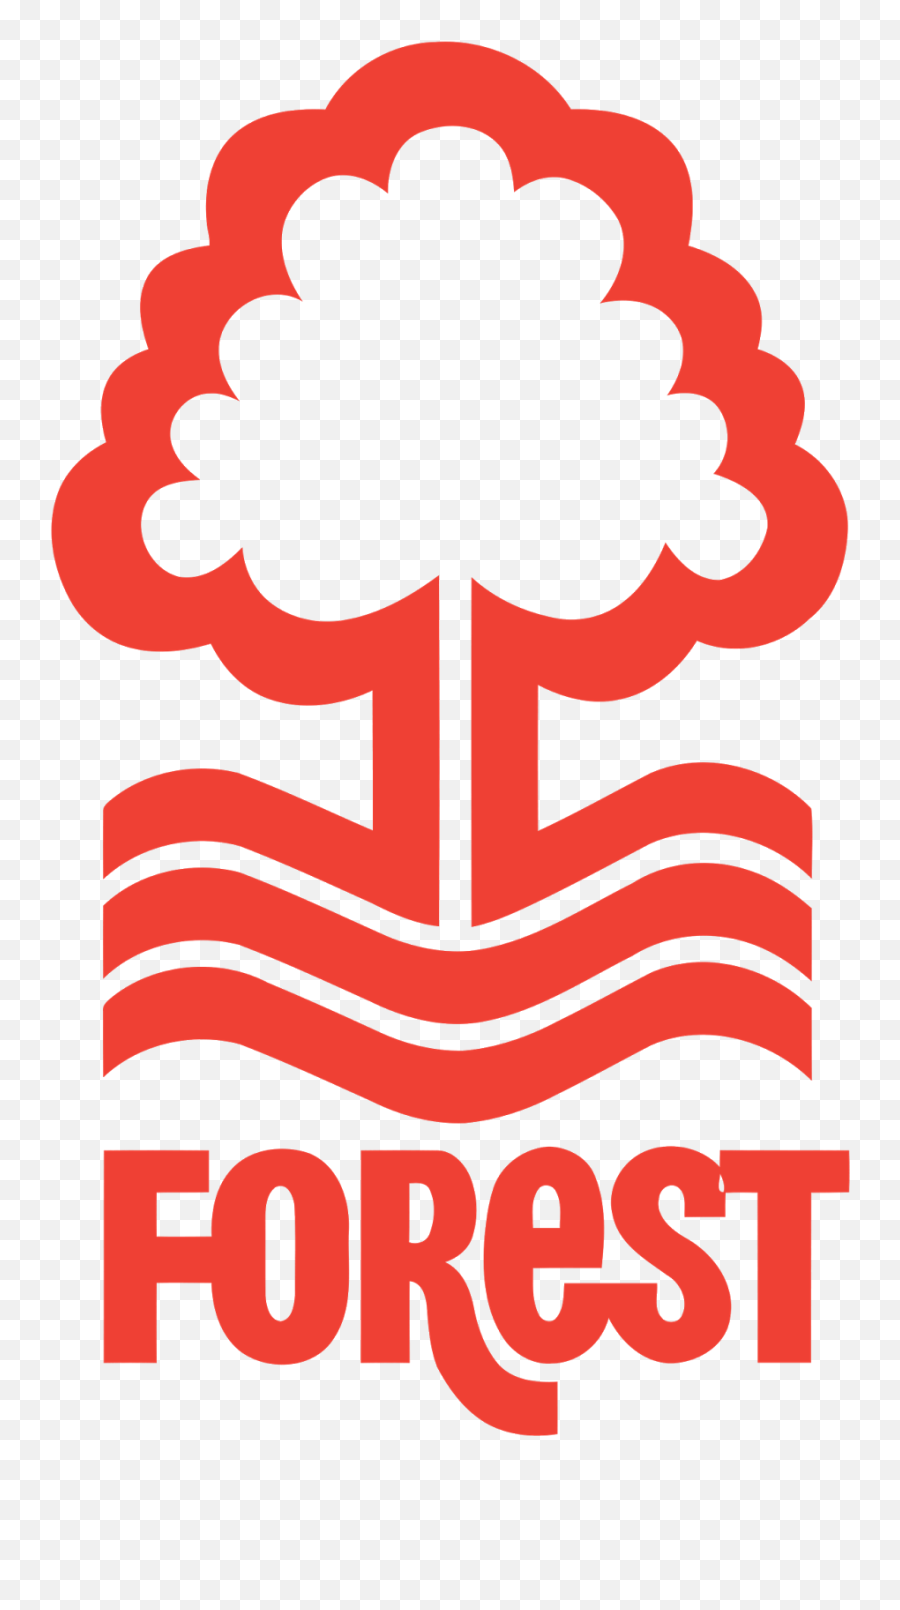 Desconhecidos Futebol Clube U2013 Nottingham Forest - Fc Gols Nottingham Forest Logo Dls Emoji,Emojis Desconhecidos